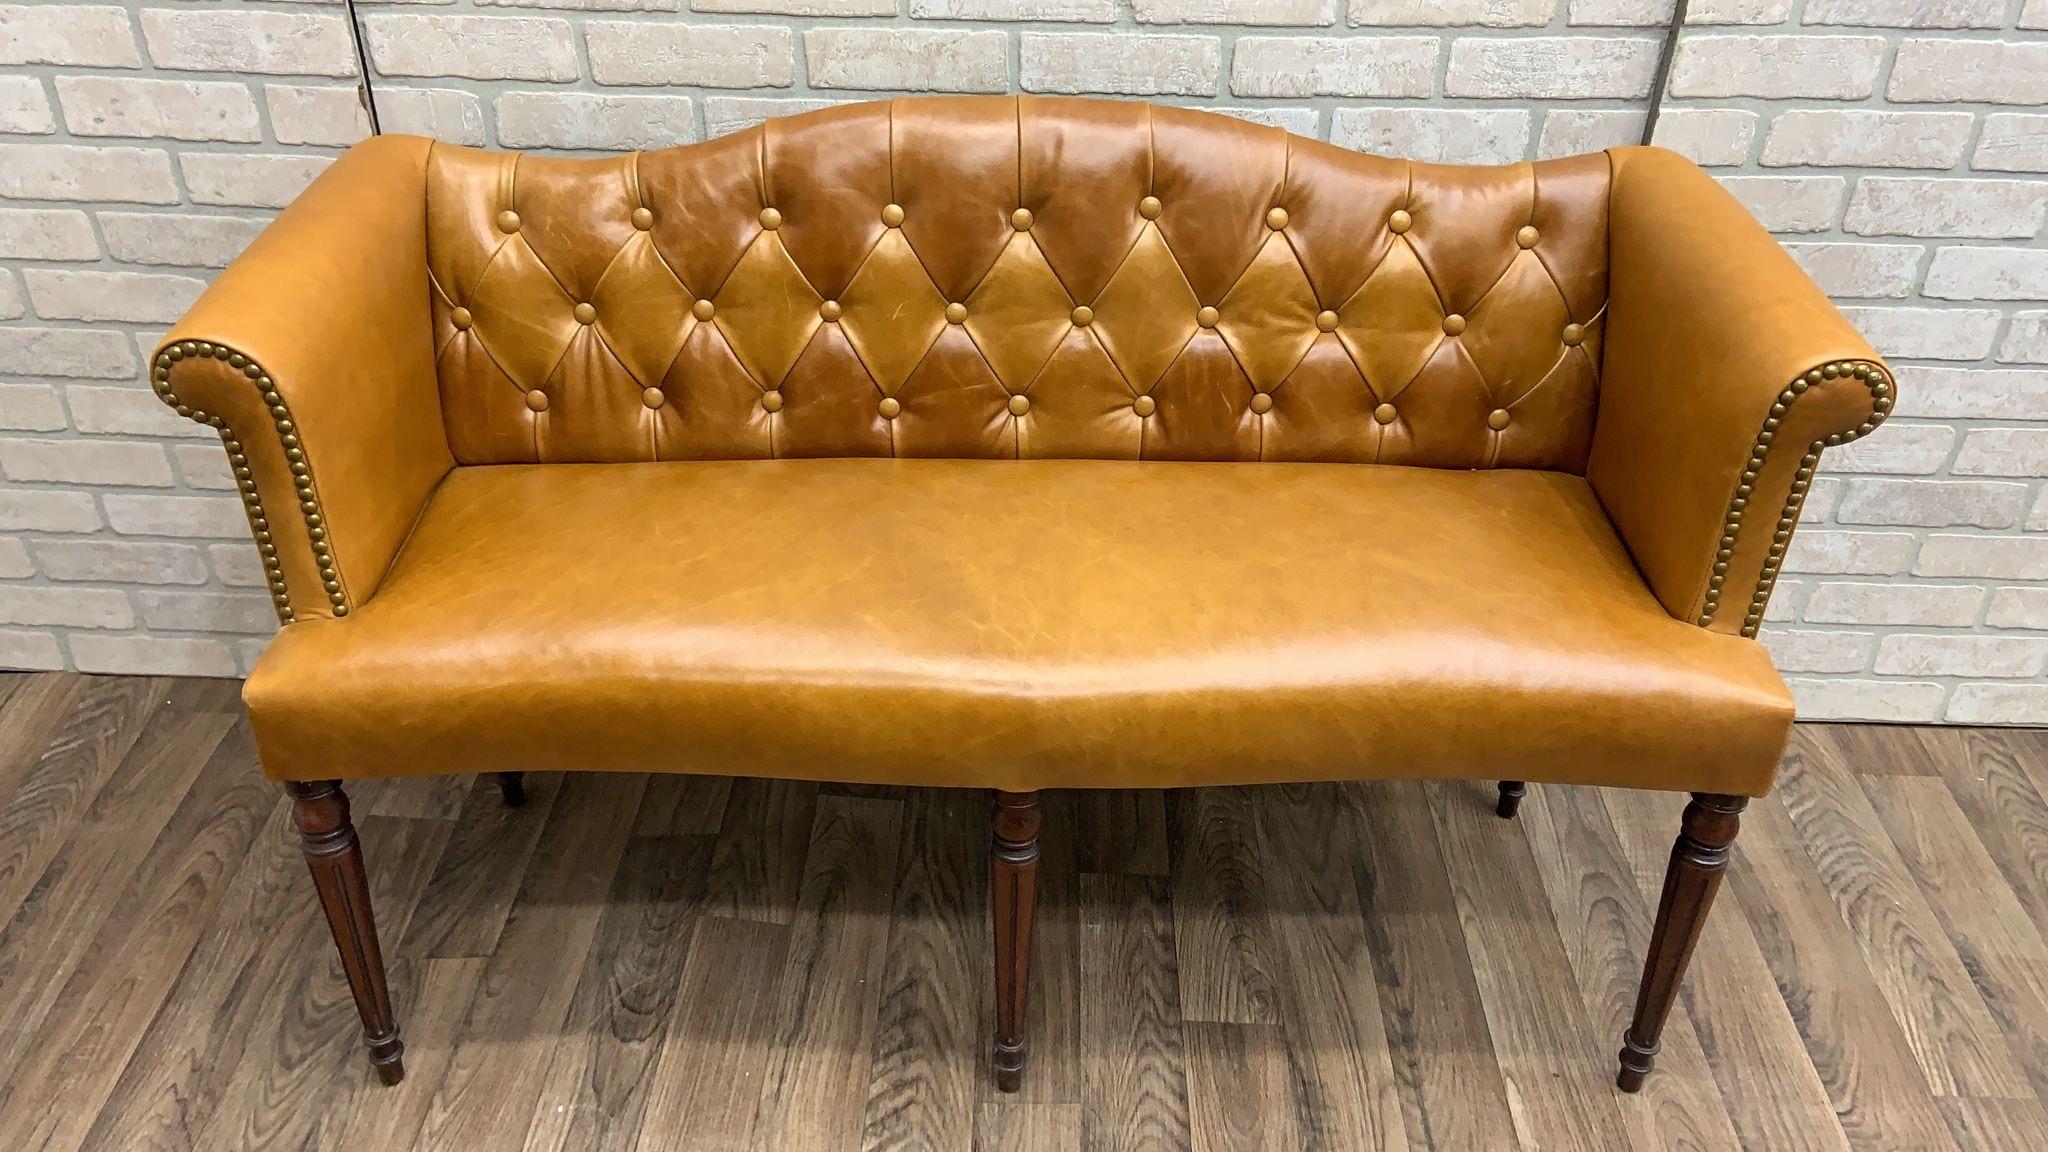 20ième siècle Antiquities British Colonial Settee Newly Upholstered in Cognac Leather (Canapé antique British Colonial nouvellement tapissé en cuir cognac) en vente